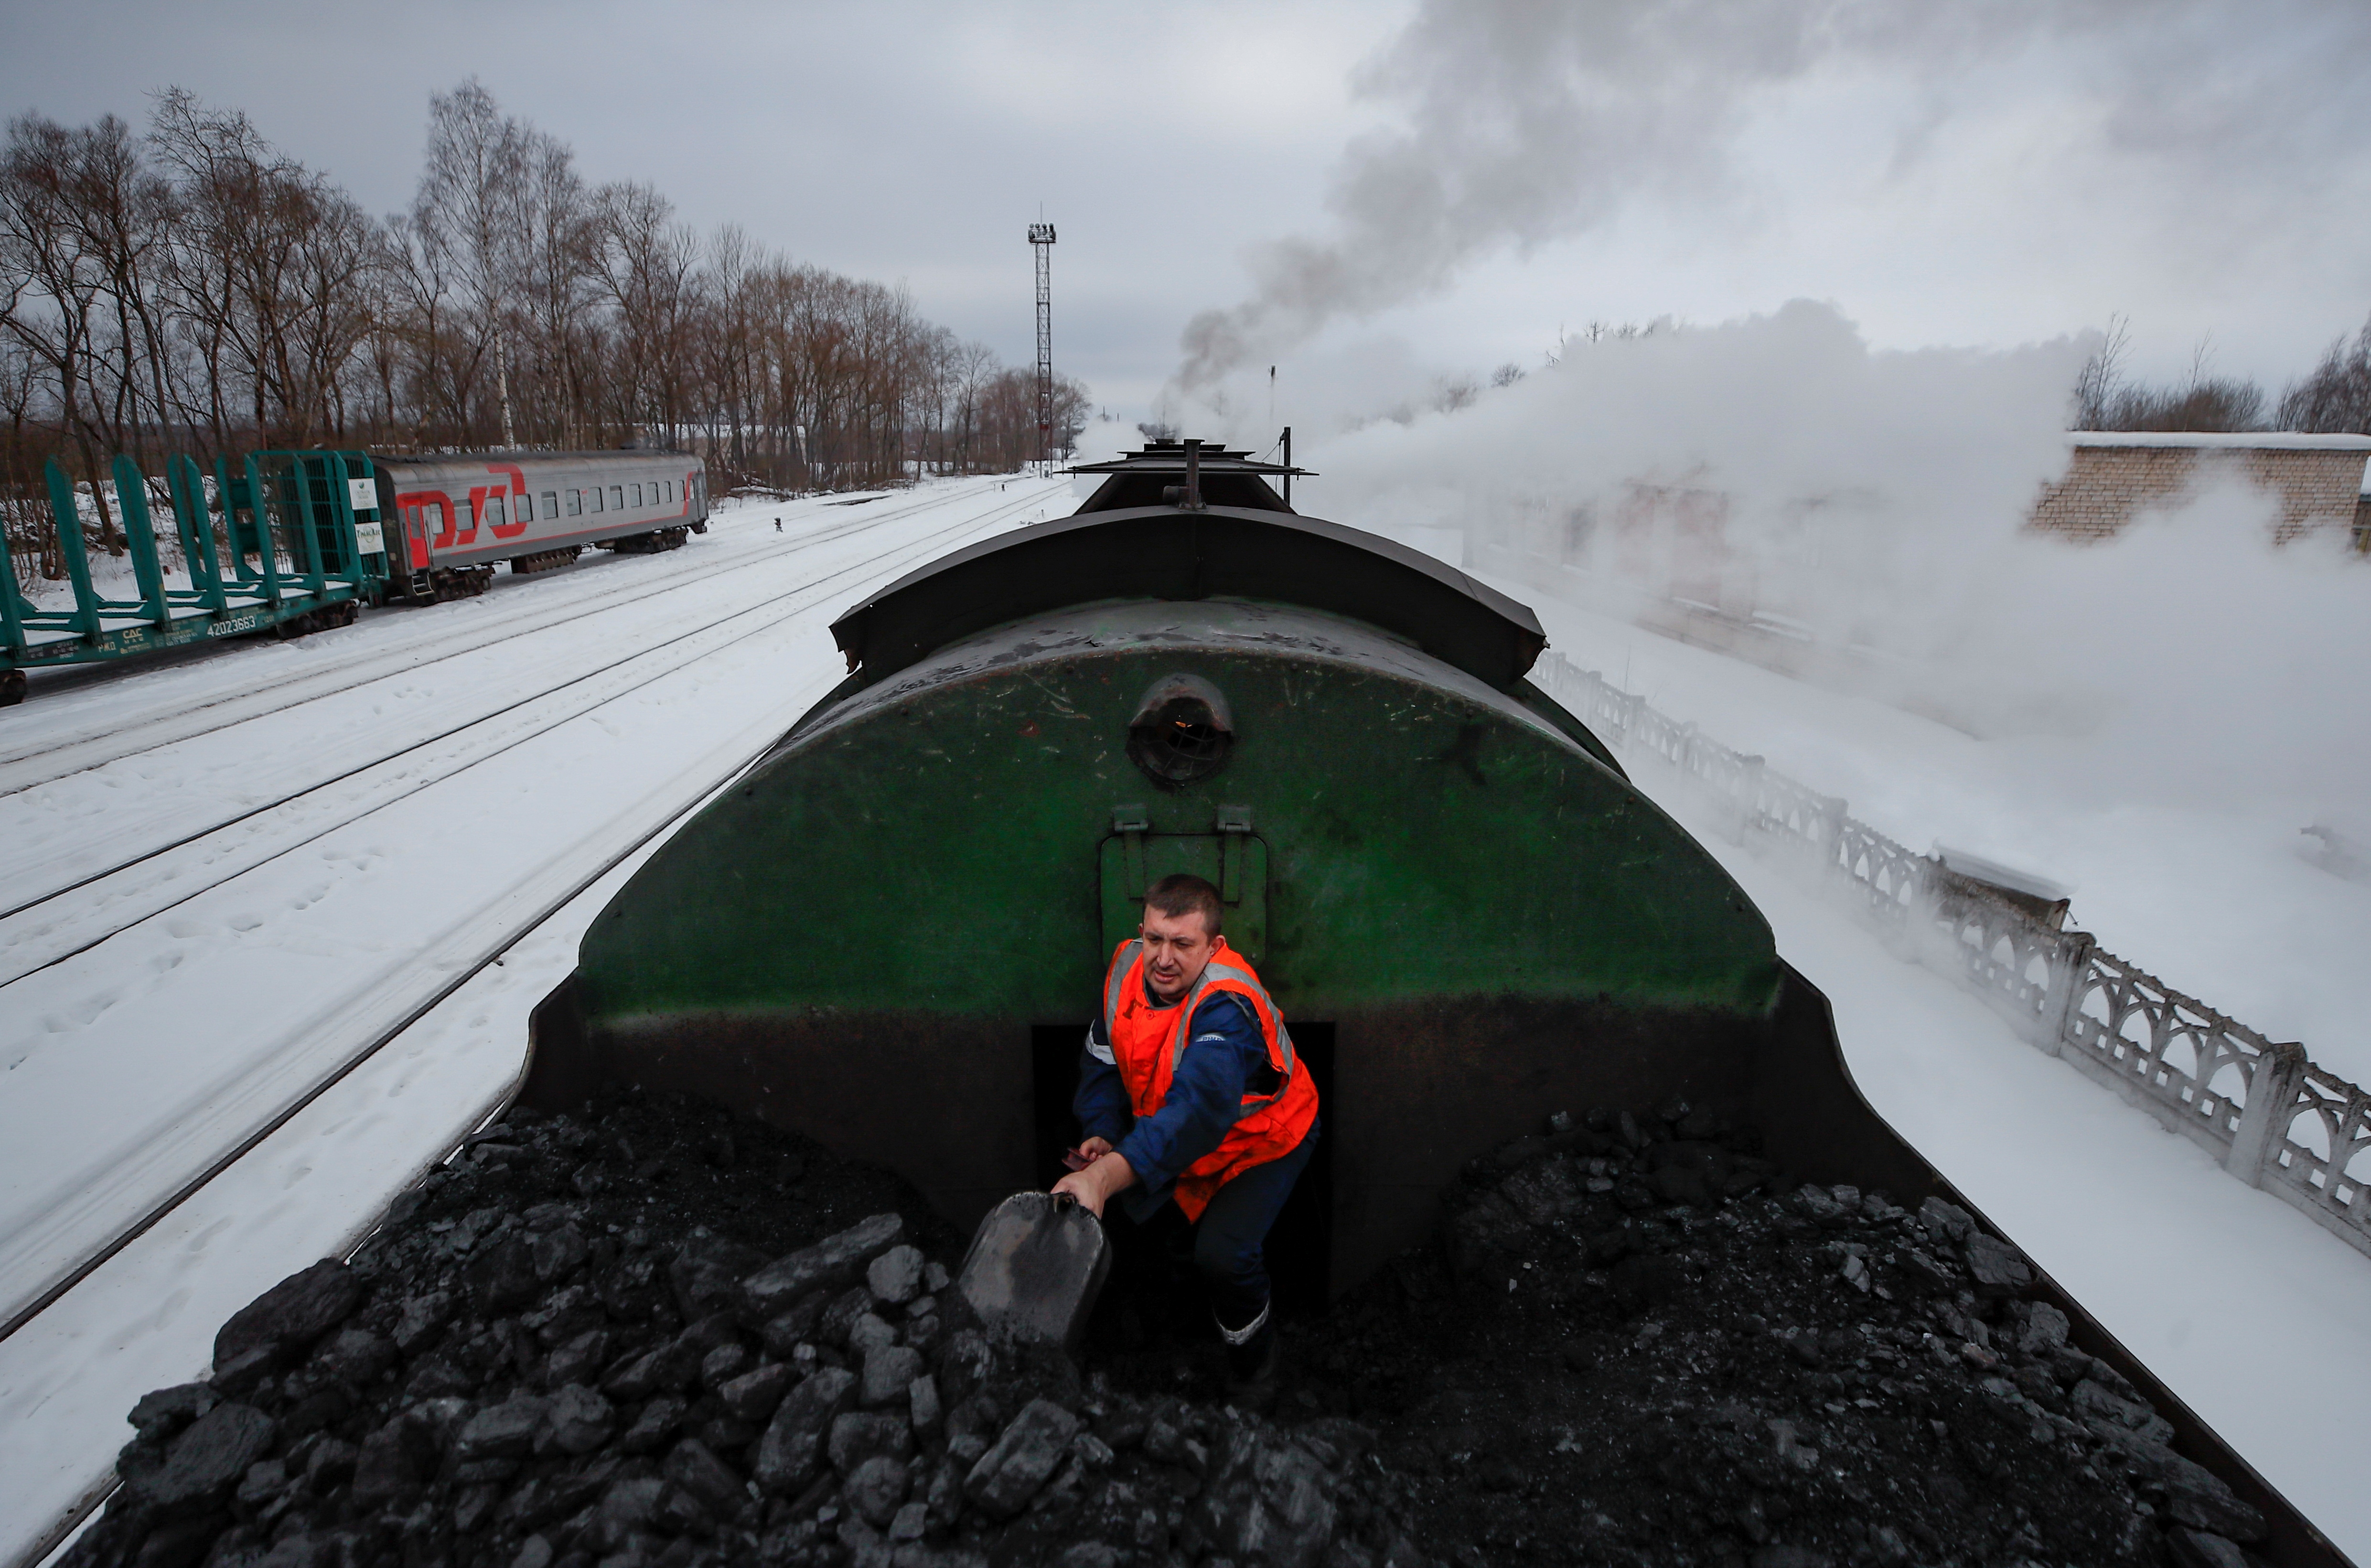 Mikhail Pestritsov, a member of locomotive crew, heaves coal in a tender of steam locomotive in Ostashkov